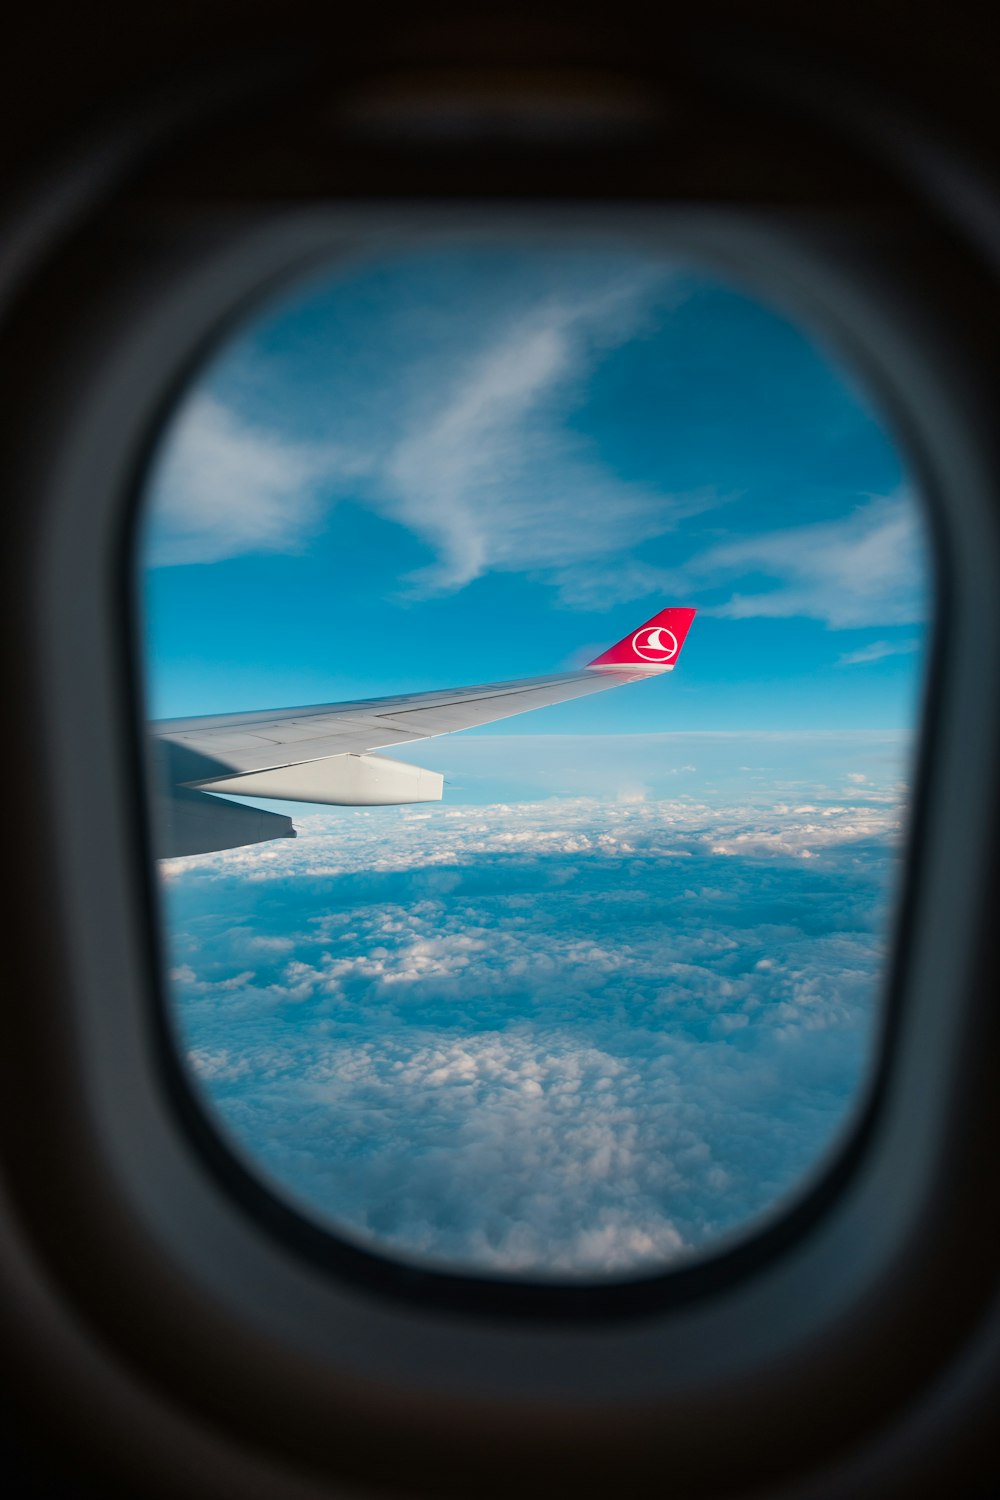 Vista del ala del avión a través de la ventana